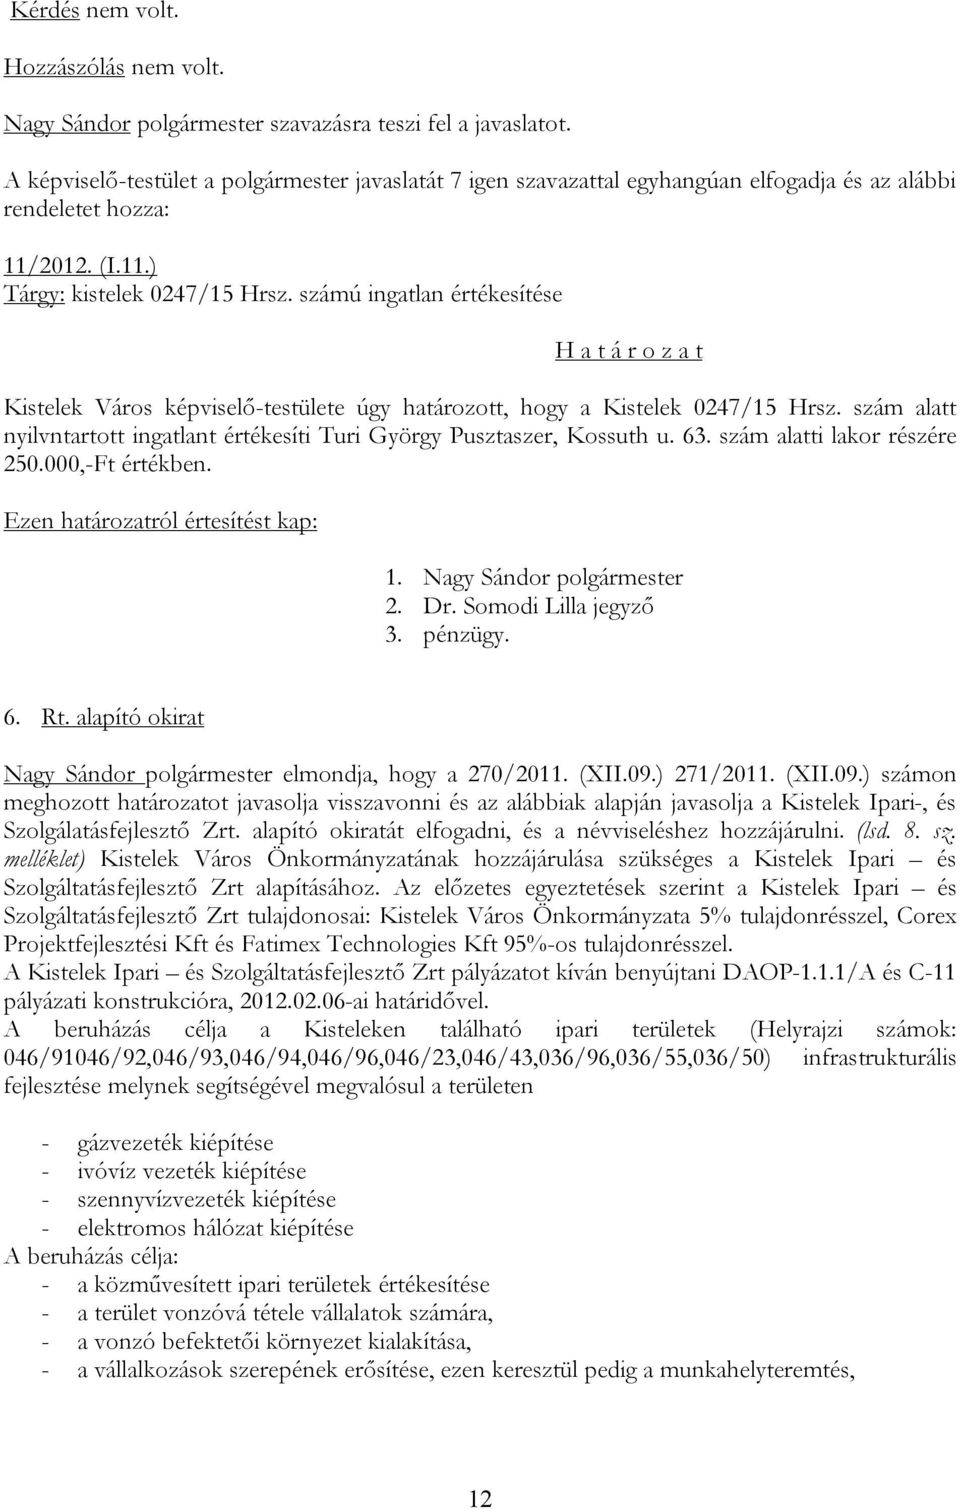 alapító okirat Nagy Sándor polgármester elmondja, hogy a 270/2011. (XII.09.